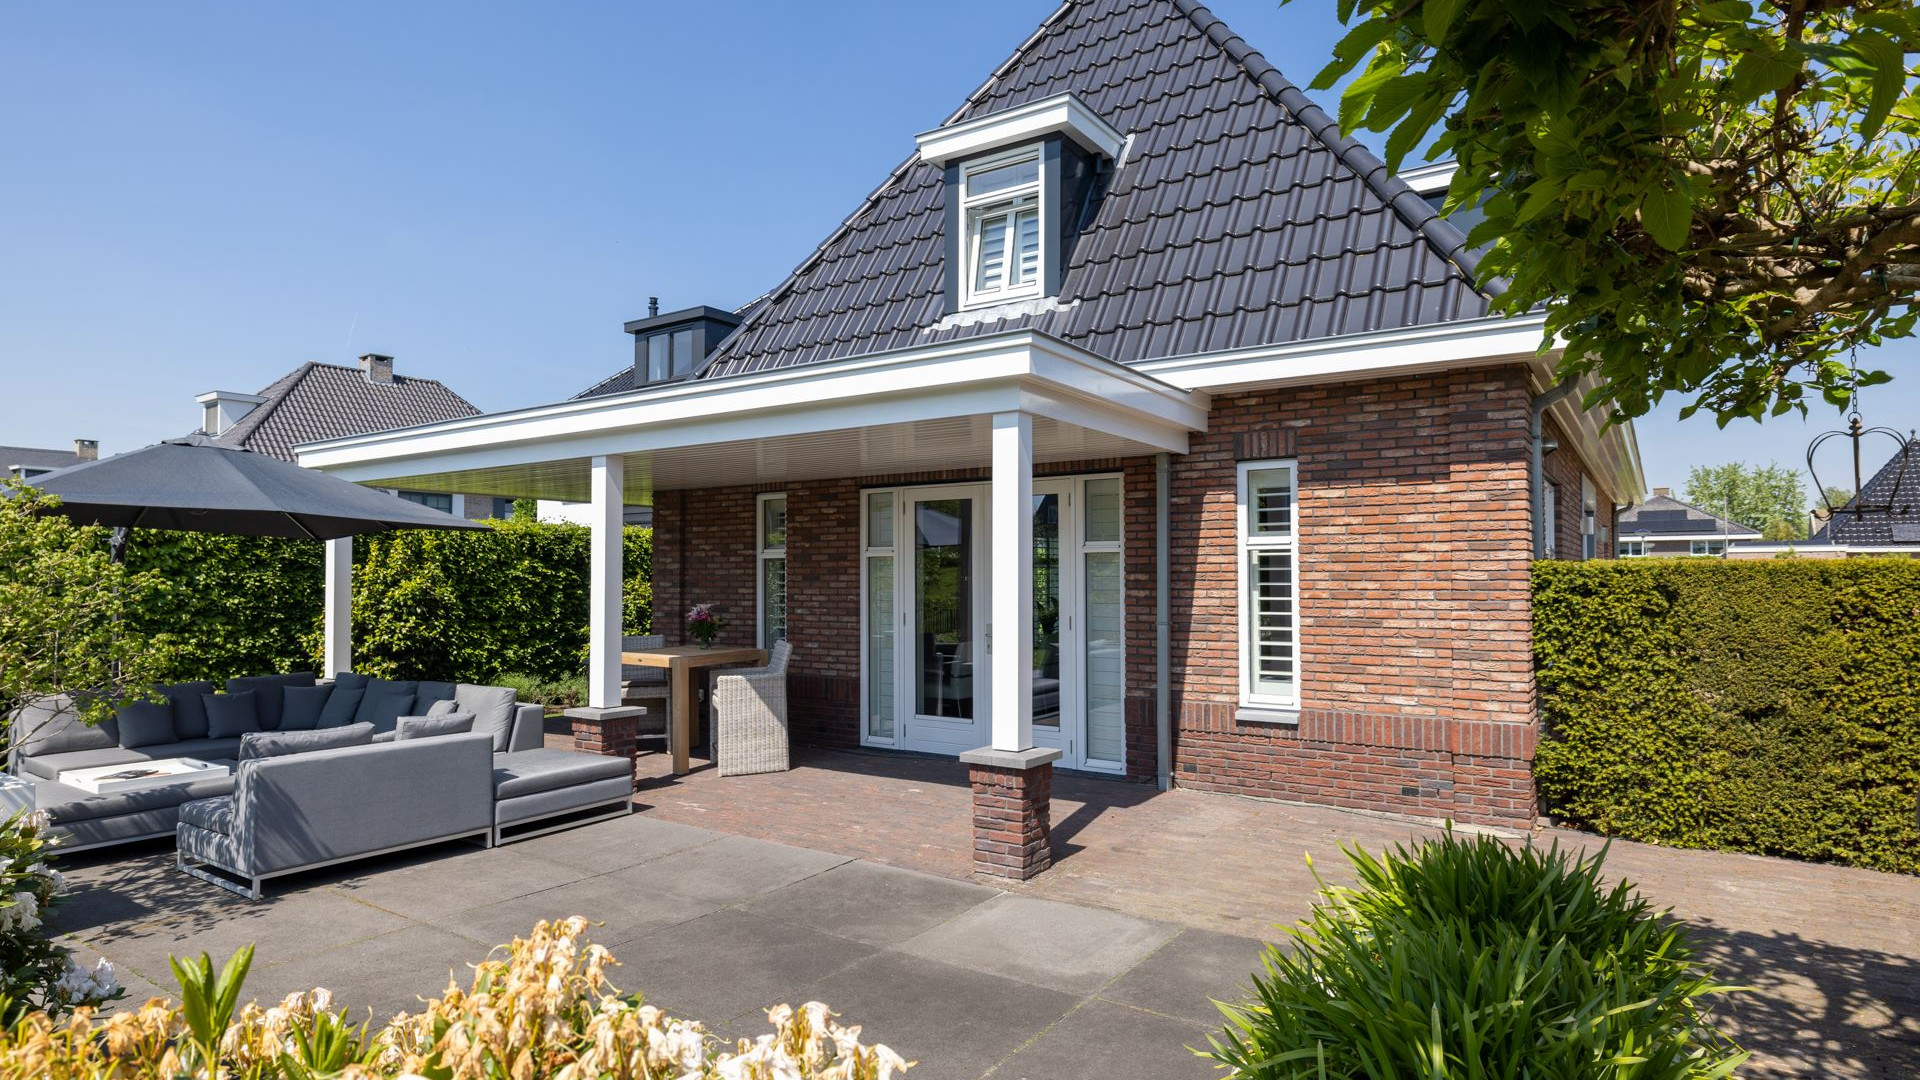 Keeper van Feijenoord koopt miljoenen villa in Berkel en Rodenrijs. Zie foto's 28